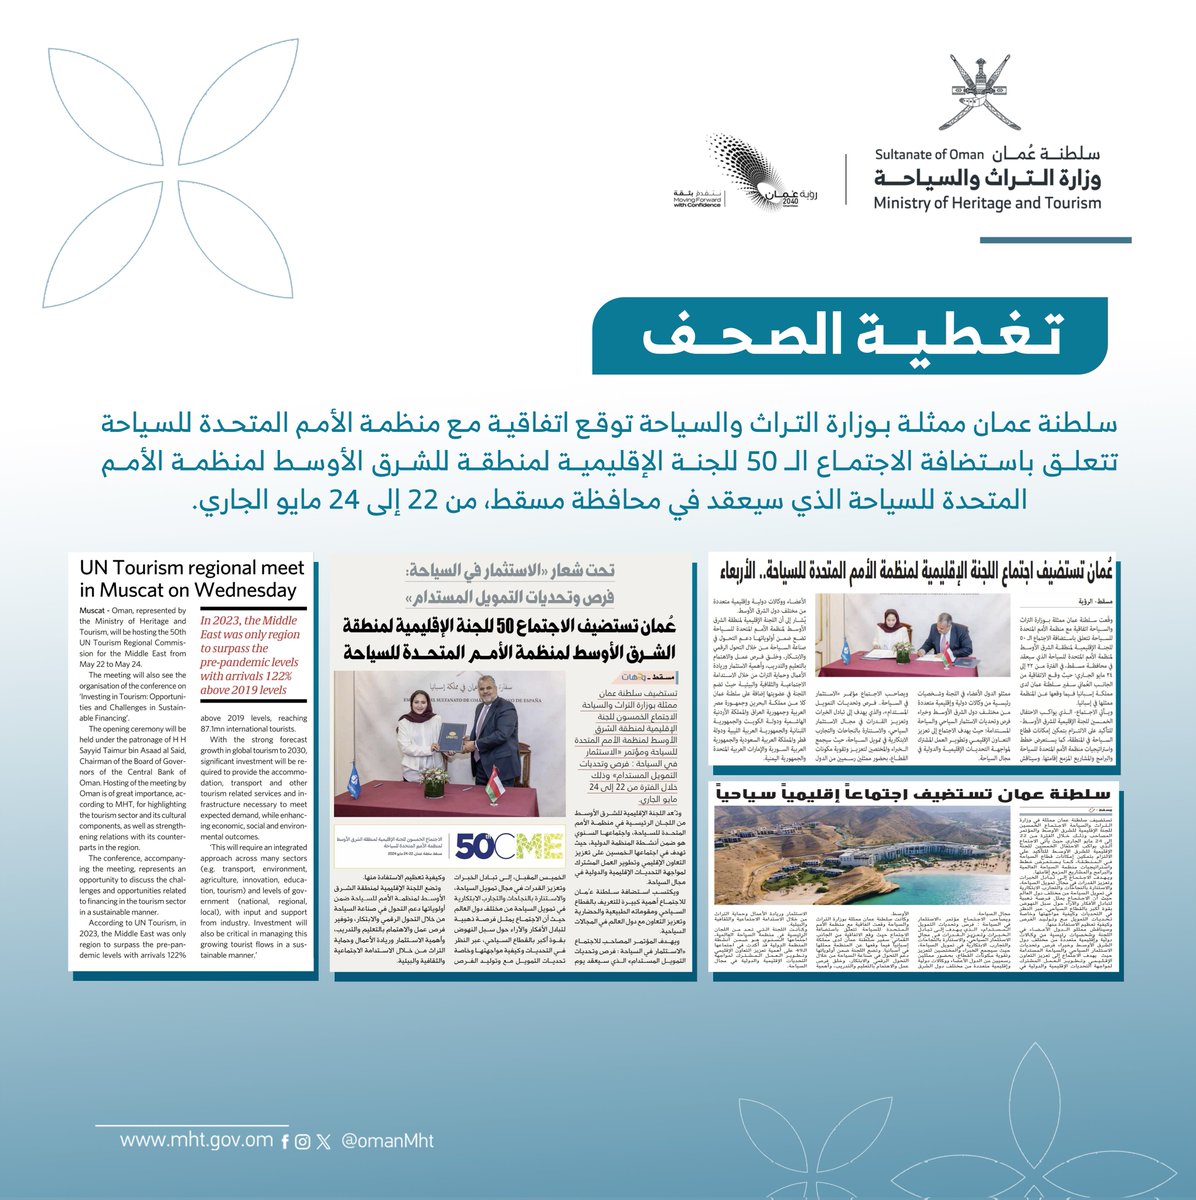 الصحف تتناول خبر توقيع سلطنة عمان ممثلة بالوزارة لاتفاقية استضافة الاجتماع الـ 50 للجنة الإقليمية لمنطقة للشرق الأوسط لمنظمة الأمم المتحدة للسياحة. #تراث_وسياحة #الاجتماع_الخمسون